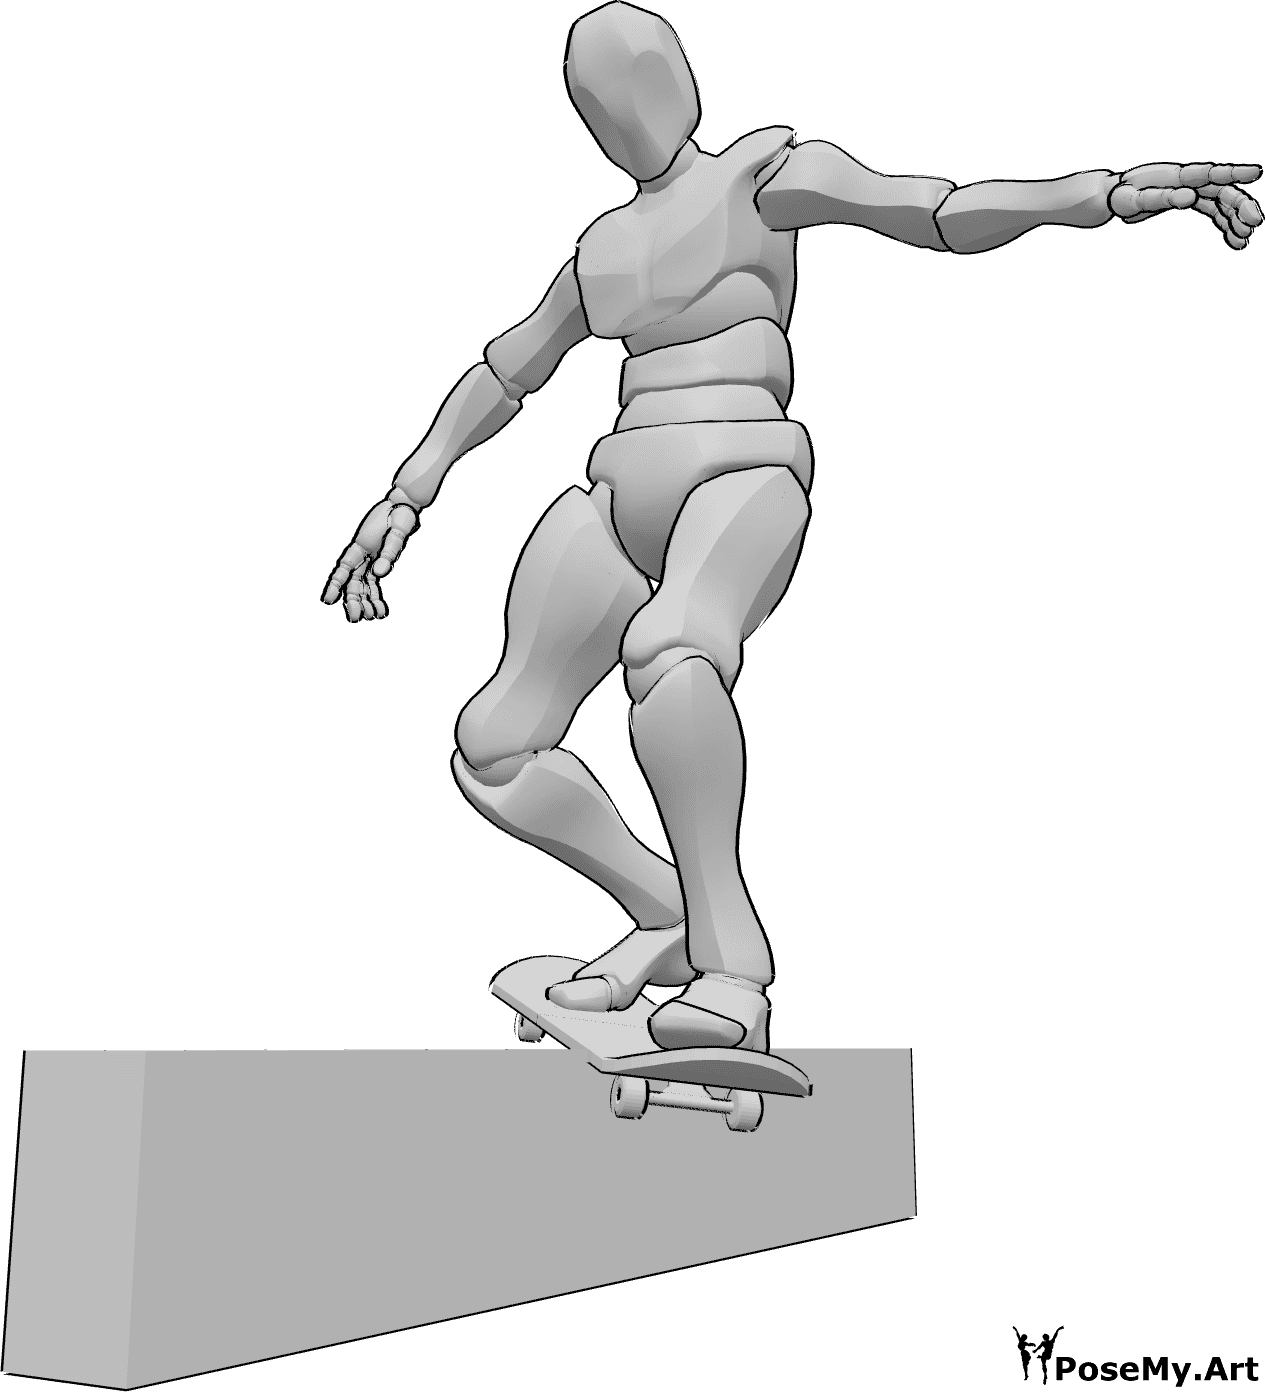 Referencia de poses- Barandilla de monopatín pose deslizante - Hombre se desliza sobre una barandilla con su monopatín, el equilibrio con las manos, monopatín dibujo de referencia